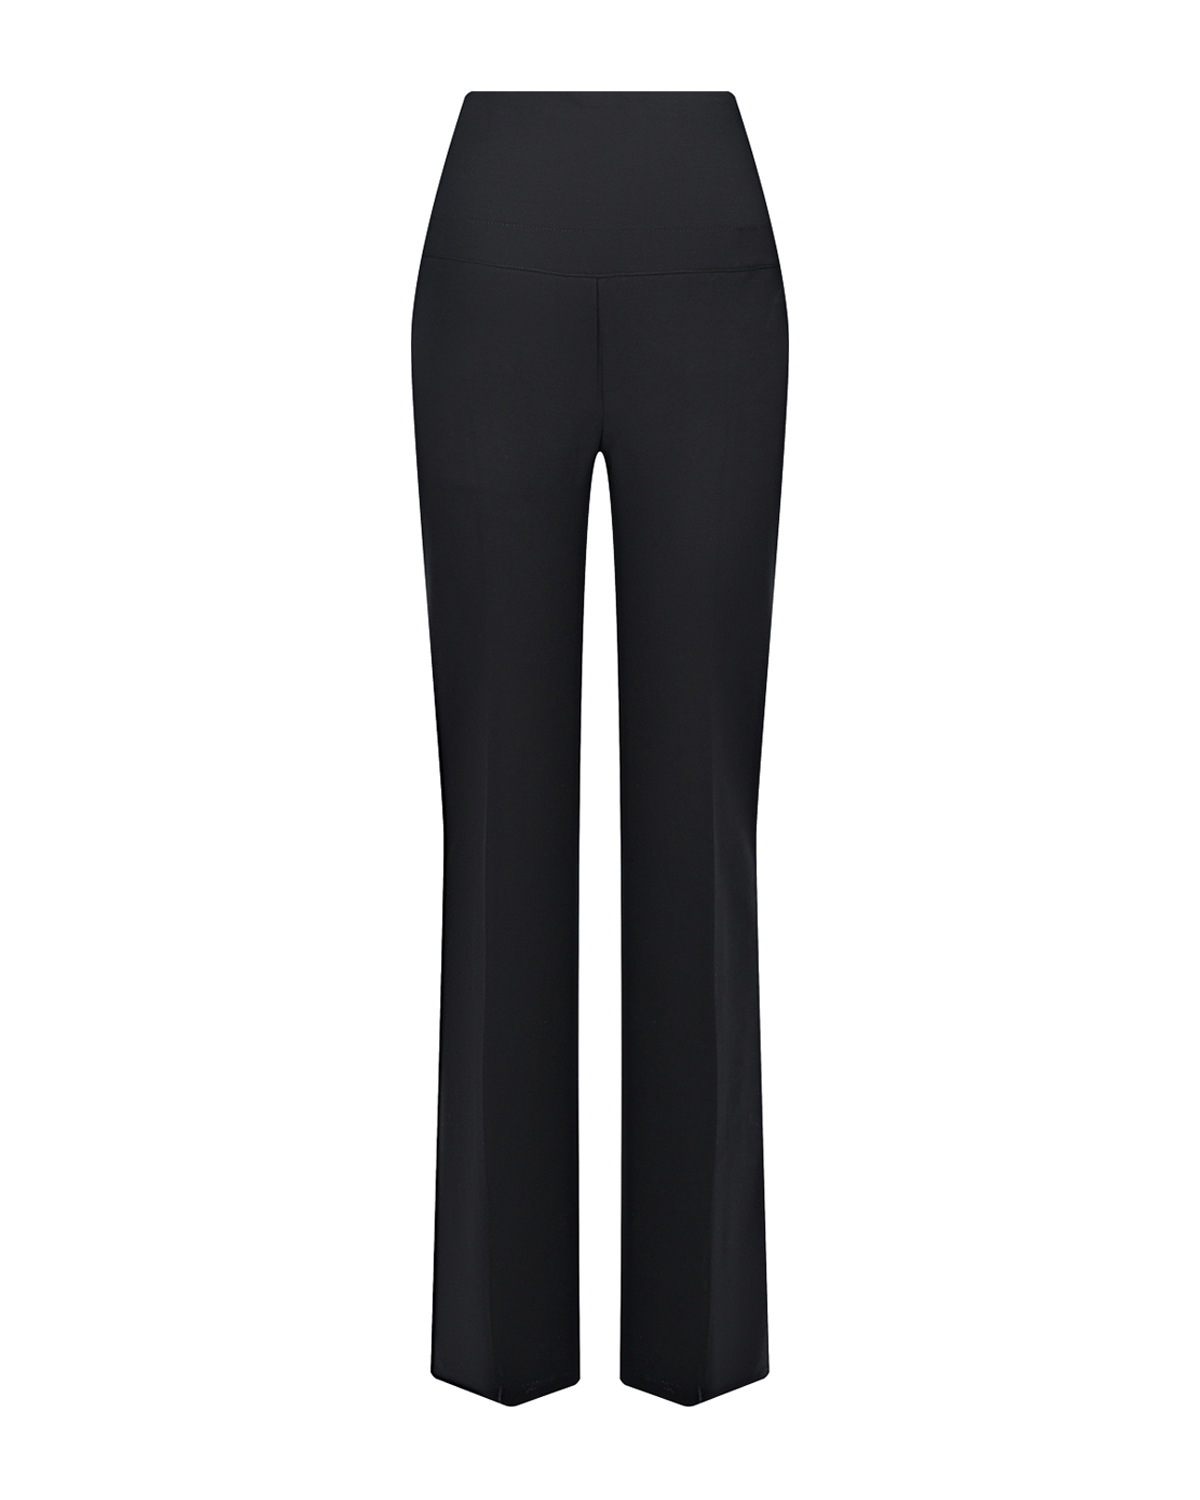 Черные брюки Comfy LEO Pietro Brunelli, размер 40, цвет черный - фото 1